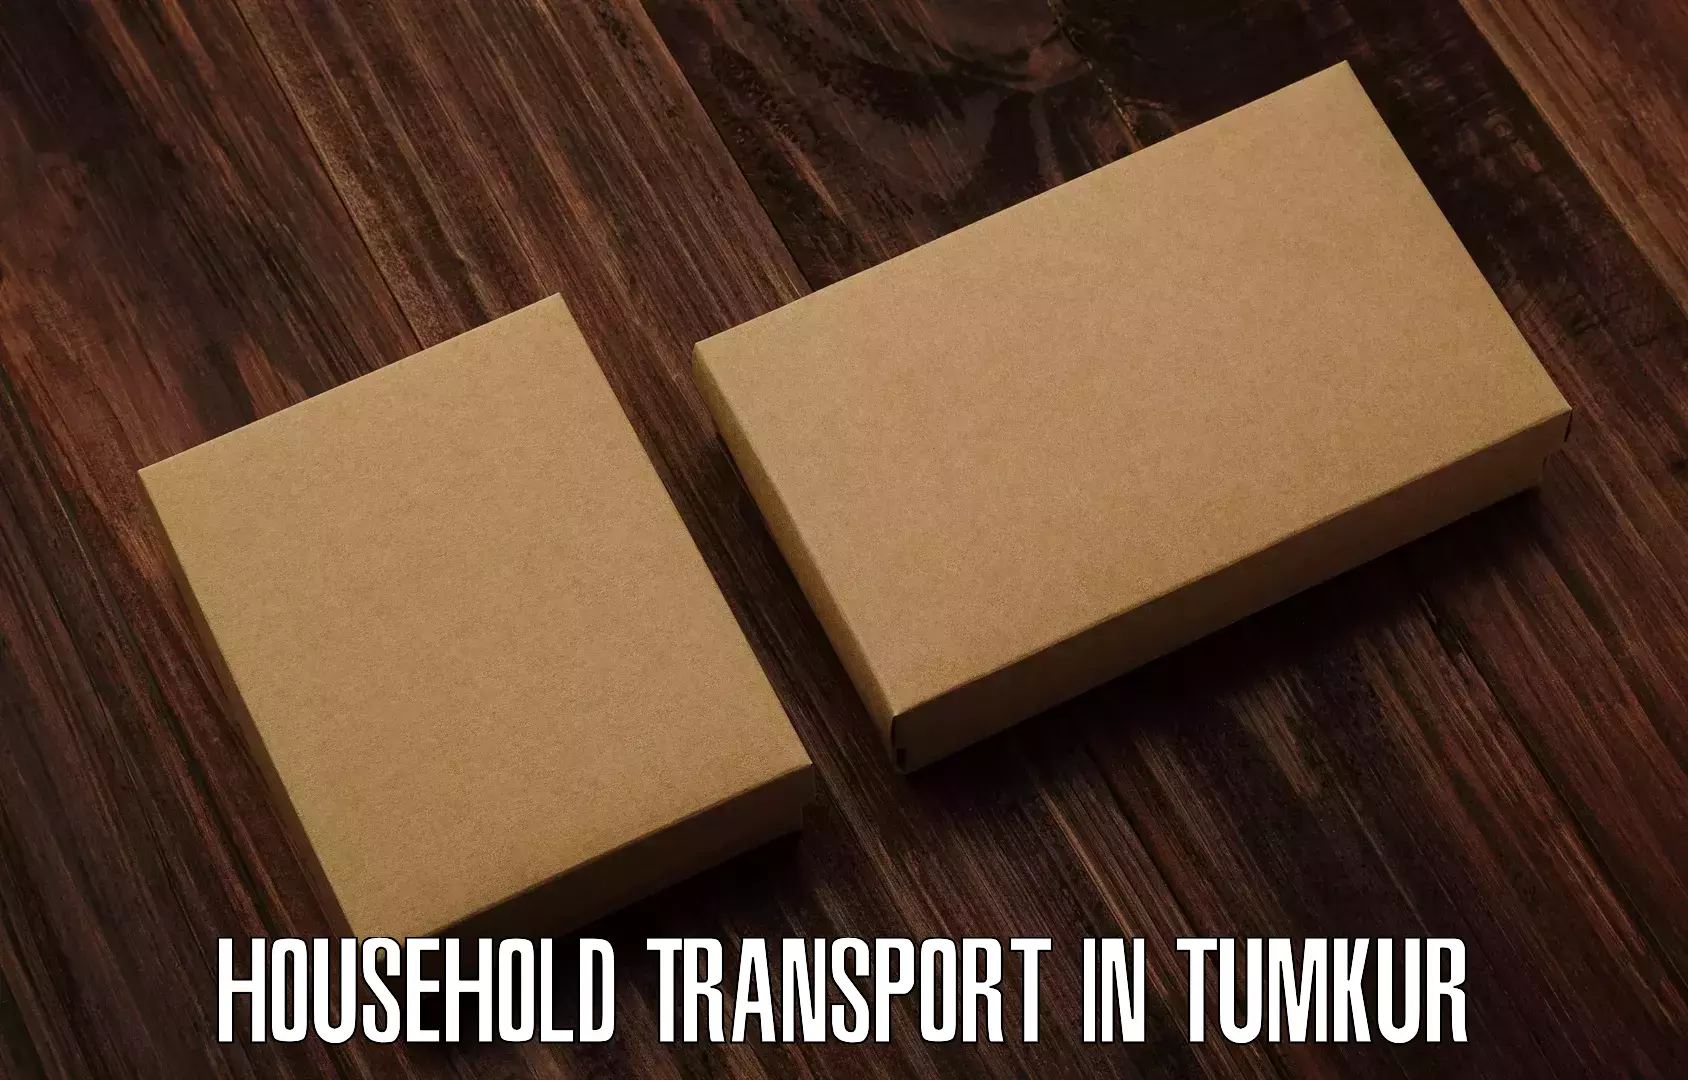 Professional goods transport in Tumkur